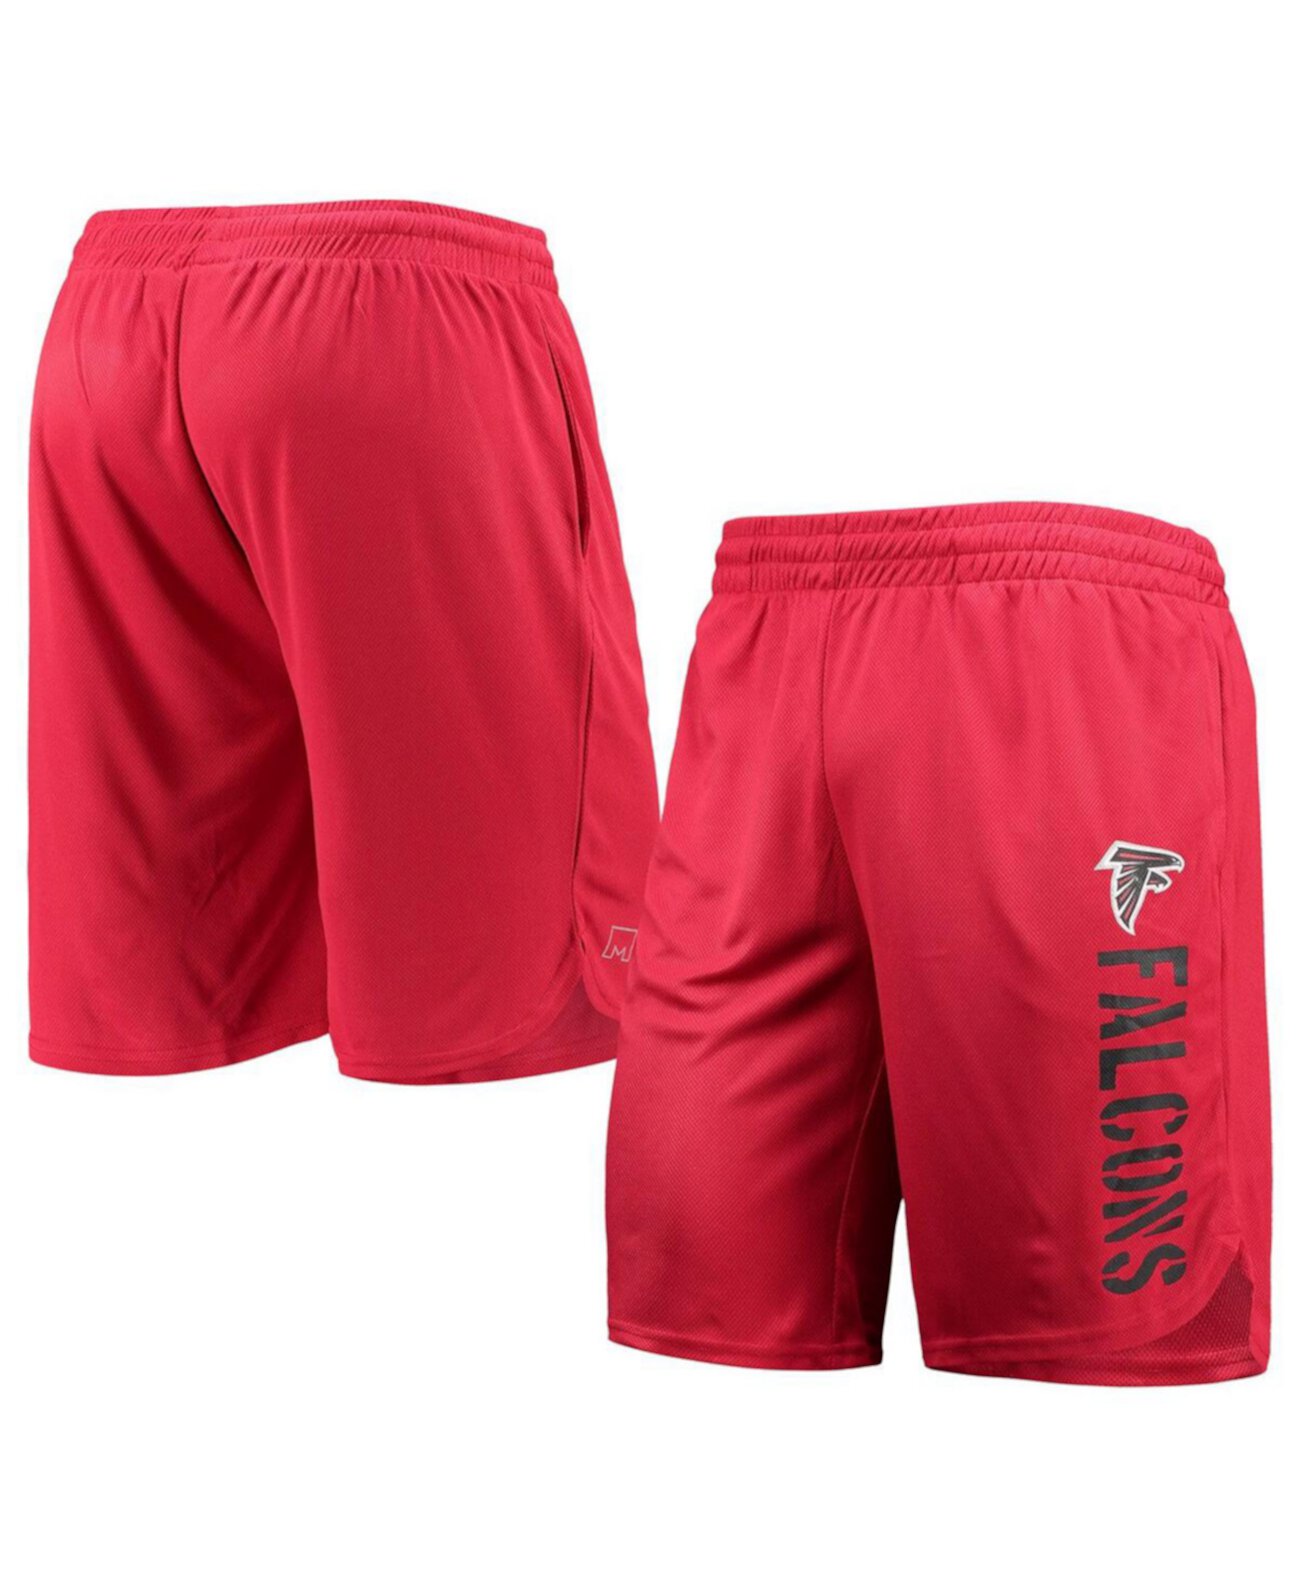 Красные мужские тренировочные шорты Atlanta Falcons MSX by Michael Strahan